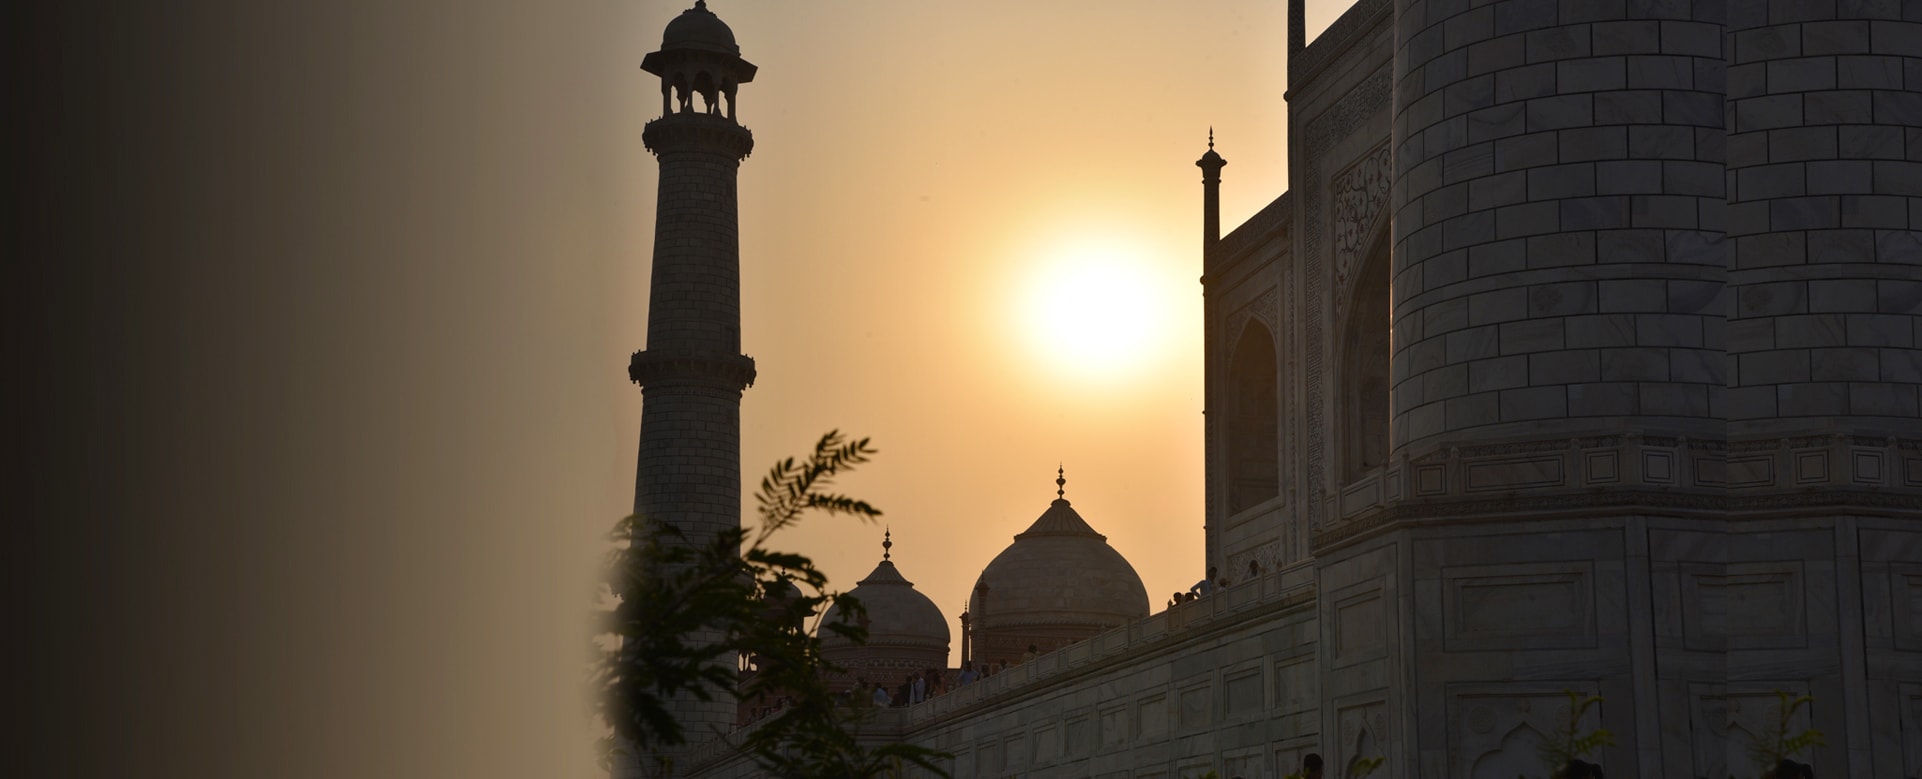 GII-Programs & Services - Taj Mahal Slide